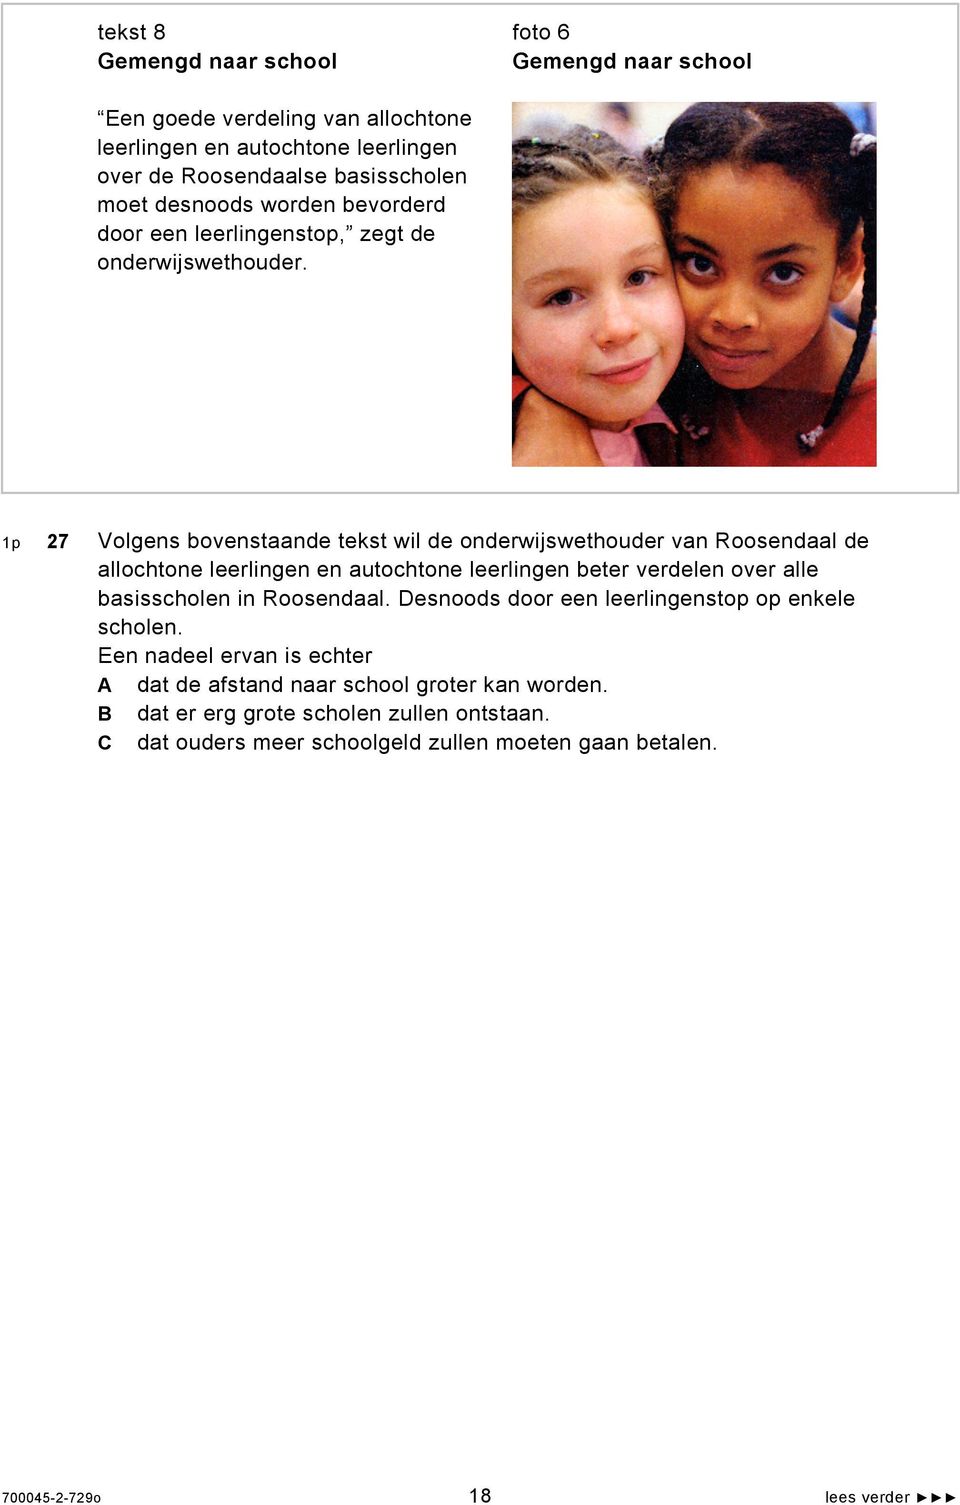 1p 27 Volgens bovenstaande tekst wil de onderwijswethouder van Roosendaal de allochtone leerlingen en autochtone leerlingen beter verdelen over alle basisscholen in